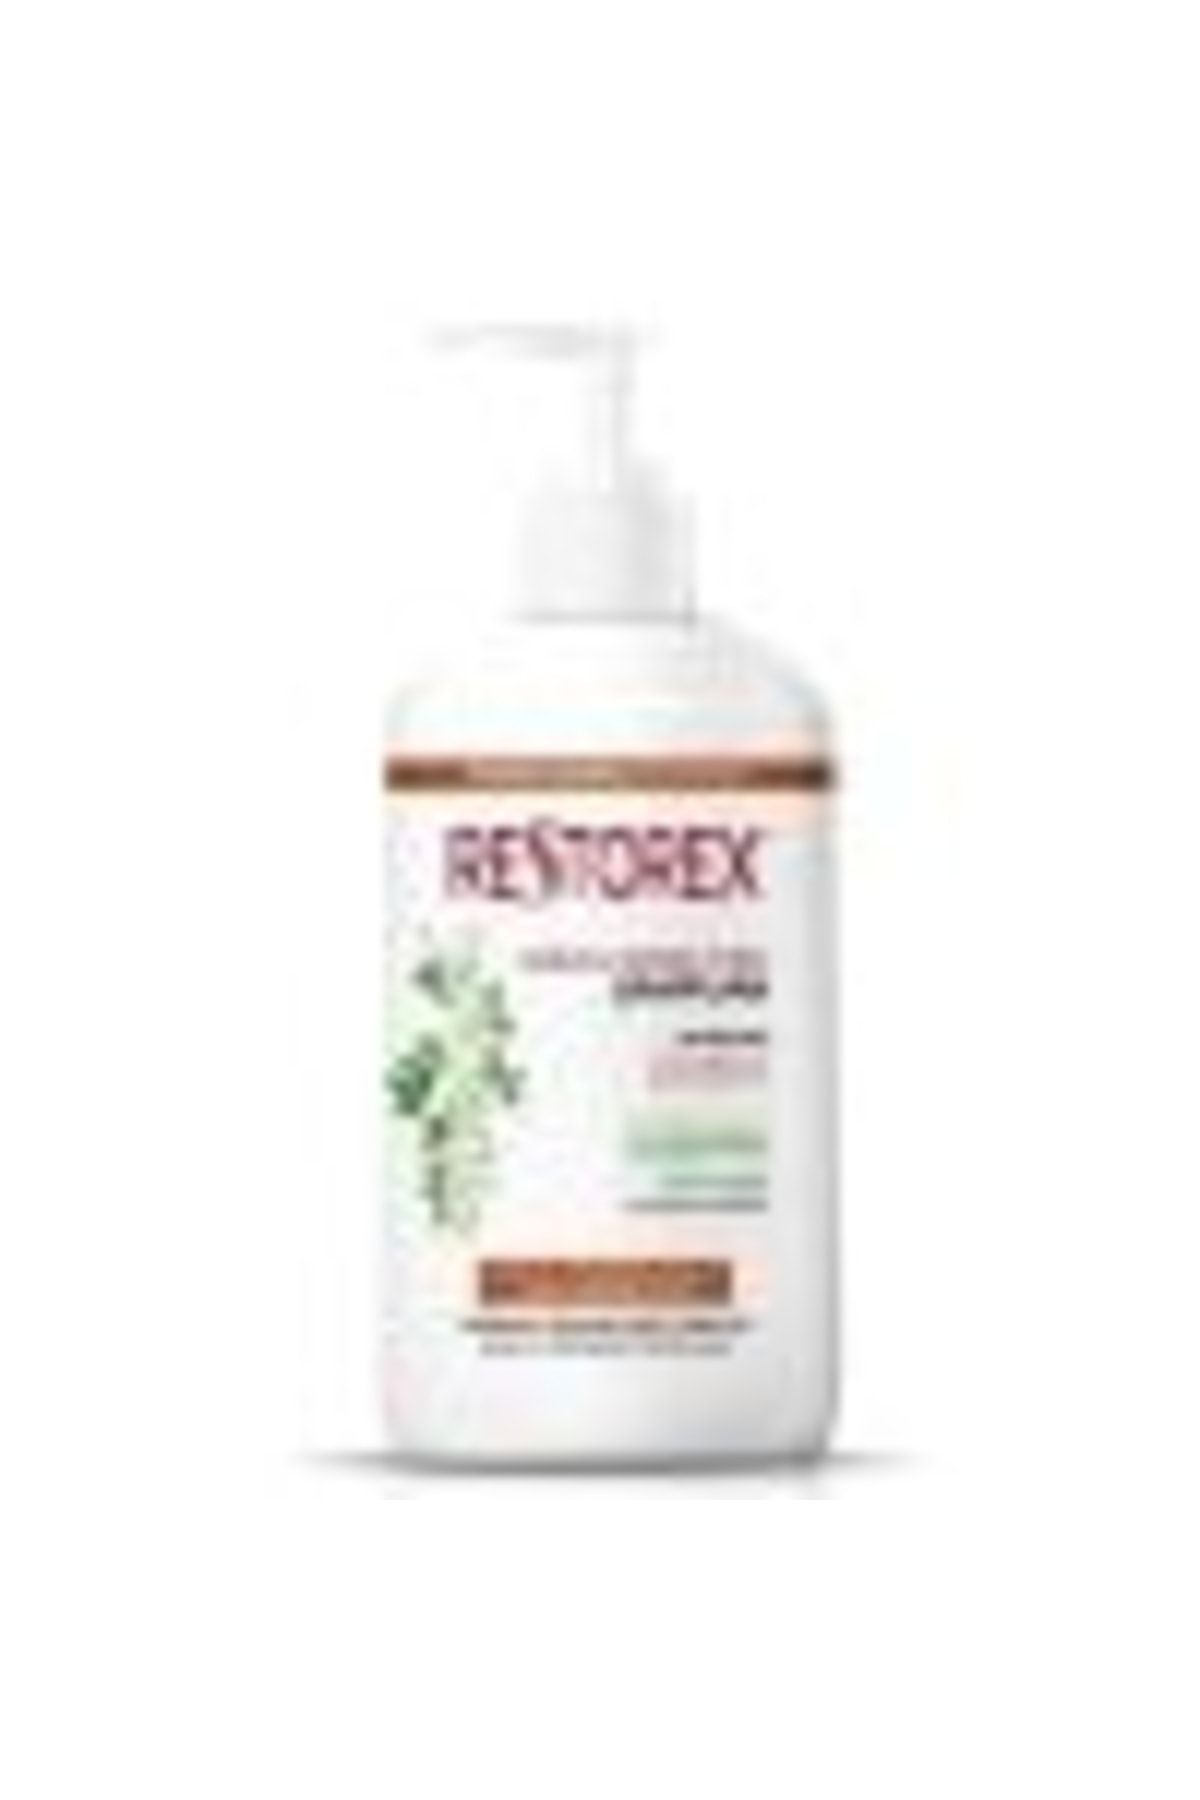 Restorex Onarıcı Şampuan 1000 Ml